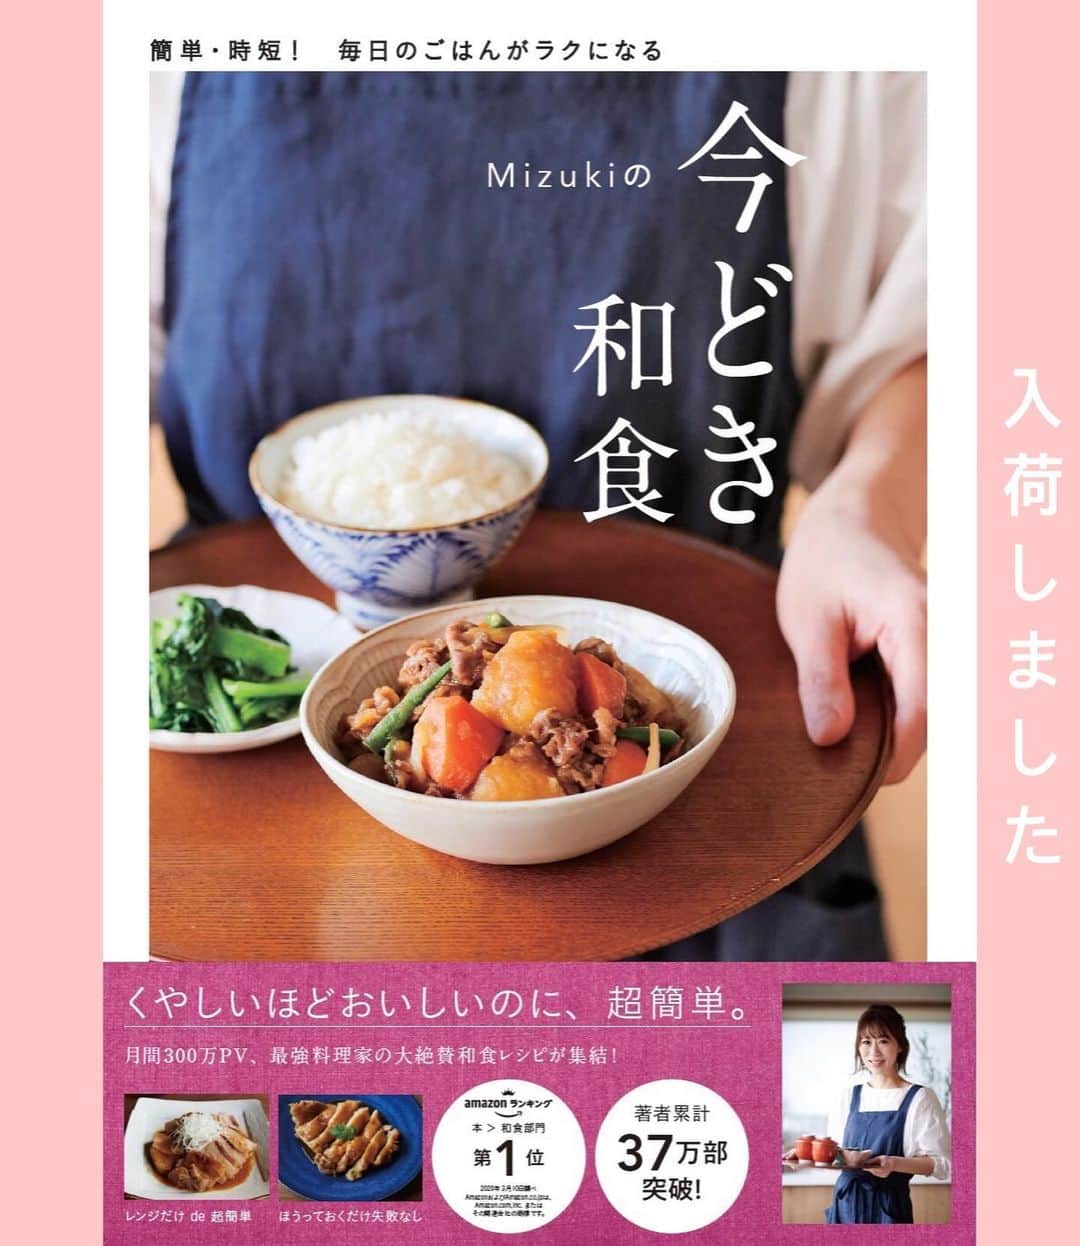 Mizuki【料理ブロガー・簡単レシピ】さんのインスタグラム写真 - (Mizuki【料理ブロガー・簡単レシピ】Instagram)「・﻿ 【レシピ】ーーーーーーーーーーーーーー﻿ ♡和えるだけ♡ツナマヨパスタサラダ♡﻿ ーーーーーーーーーーーーーーーーーーー﻿ ﻿ ﻿ ﻿ おはようございます(*^^*)﻿ ﻿ 今日はツナ缶を使用した﻿ パスタサラダのご紹介です♩﻿ これ、2人分のサラダにも﻿ 1人分の一皿ごはんにもなりますよ♡﻿ ﻿ 作り方は超簡単(*´艸`)﻿ 混ぜるだけのツナマヨソースと﻿ 茹でたパスタを和えるだけ♩﻿ ﻿ とっても簡単&あっという間に作れるので﻿ よかったらお試し下さいね(*^^*)﻿ ﻿ ﻿ ﻿ ーーーーーーーーーーーーーーーーーーーー﻿ 【サラダとして2人分】﻿ パスタ...80g﻿ ツナ...1缶(70g)﻿ 玉ねぎ...1/4個﻿ ●マヨネーズ...大2﻿ ●牛乳...大1﻿ ●和風だし・醤油・砂糖...各小1/3﻿ ●塩こしょう...少々﻿ ﻿ 1.ツナは軽く油を切る。玉ねぎは薄くスライスし、水に5分晒して水気を切る。パスタは長さを3等分に折り、塩(分量外)を加えた熱湯で袋の表示時間通り茹で、流水で冷やして水気を切る。﻿ 2.ボウルに●を入れて混ぜ、1を加えて和える。﻿ ーーーーーーーーーーーーーーーーーーーー﻿ ﻿ ﻿ ﻿ 《ポイント》﻿ ♦︎玉ねぎとパスタの水気はしっかり切って下さい♩﻿ ♦︎食べる時に粗挽き黒こしょうを振っても美味しいですよ♩﻿ ﻿ ﻿ ﻿ ﻿ ﻿ ﻿ ＿＿＿＿＿＿＿＿＿＿＿＿＿＿＿＿＿﻿ 【💎インスタライブのお知らせ💎】﻿ 14日(日曜日)の14時頃から﻿ インスタライブを行います✨﻿ 詳細はまたお知らせさせて下さいね♩﻿ ￣￣￣￣￣￣￣￣￣￣￣￣￣￣￣￣￣﻿ ﻿ ﻿ ﻿ ﻿ ﻿ ﻿ 🔻入荷しました🔻﻿ ストーリーにリンク貼っています🙇‍♀️﻿ ＿＿＿＿＿＿＿＿＿＿＿＿＿＿＿＿＿＿＿﻿ 📕\ \ 新刊発売中 / /📕﻿ 簡単・時短！ 毎日のごはんがラクになる﻿ ✨🦋 【 #Mizukiの今どき和食 】🦋✨﻿ ＿＿＿＿＿＿＿＿＿＿＿＿＿＿＿＿＿＿＿﻿ ﻿ なるべく少ない材料で﻿ 手間も時間も省きながら﻿ 簡単にできるおいしい和食レシピ♩﻿ 簡単に失敗なくマスターできる一冊で﻿ もっと気軽に、カジュアルに﻿ 和食を楽しんで下さいね(*^^*)﻿ ﻿ ﻿ ーーー ⭐️PART.1 メインおかず ⭐️ーーー﻿ 素材別にレシピをご紹介しています♩﻿ 和食の定番から新定番まで﻿ どれも押さえておきたいメニューばかり。﻿ 肉じゃがはフライパンで！焼き豚はレンジで！﻿ ぶり大根は切り身を使って手軽に作ります♩﻿ ﻿ ーーー ☘️PART.2 サブおかず ☘️ーーー﻿ 年中手に入るお手頃野菜と﻿ 乾物や大豆、こんにゃくなどを使った﻿ 副菜レシピをたっぷり掲載！！﻿ 普段SNSではメインおかずばかりなので﻿ 本では副菜にも力を入れています(*^^*)﻿ ﻿ ーーー 🌸PART.3 ごはんと汁物 🌸ーーー﻿ ささっと作れる丼と麺、﻿ みんなで食べたいいなり寿司や﻿ 手巻きごはんもご紹介！﻿ 複数の炊き込みごはんと﻿ 味噌汁&和風スープも盛りだくさん！﻿ ﻿ ﻿ 各レシピのポイントは﻿ 【写真付きで丁寧に解説】﻿ 副菜レシピもたっぷりなので﻿ 【メインページに副菜メモもつけました】﻿ ＊このメインにはこの副菜が合いますよ〜﻿ という献立の提案です(*^^*)﻿ 【その他コラムも充実】﻿ 全127品中ほぼ全て﻿ 【本だけのレシピです！】﻿ ＿＿＿＿＿＿＿＿＿＿＿＿＿＿＿＿＿＿＿﻿ ﻿ ﻿ ﻿ ﻿ ﻿ ＿＿＿＿＿＿＿＿＿＿＿＿＿＿＿＿＿﻿ 🎀発売中🎀﻿ 【#ホットケーキミックスのお菓子 】﻿ ﻿ 一冊まるっとホケミスイーツ♩﻿ 普段のおやつから﻿ 特別な日にも使えるレシピを﻿ この一冊に詰め込みました(*^^*)﻿ ホットケーキミックスを使えば﻿ 簡単に本格的なお菓子が作れますよ♡﻿ ＿＿＿＿＿＿＿＿＿＿＿＿＿＿＿＿＿﻿ ﻿ ⭐️ストーリー、ハイライト、プロフ画面に﻿ 本のURLを貼らせていただいております♩﻿ →(@mizuki_31cafe )﻿ ﻿ ﻿ ﻿ ﻿ #ツナ#パスタ#サラダ#パスタサラダ#和えるだけ#うちで過ごそう#おうち時間#Mizuki#簡単レシピ#時短レシピ#節約レシピ#料理#レシピ#フーディーテーブル#マカロニメイト#おうちごはん#デリスタグラマー#料理好きな人と繋がりたい#おうちごはん#lover#foodpic#follow#cooking#recipe#lin_stagrammer#stayhome#ツナマヨパスタサラダm」6月11日 7時49分 - mizuki_31cafe